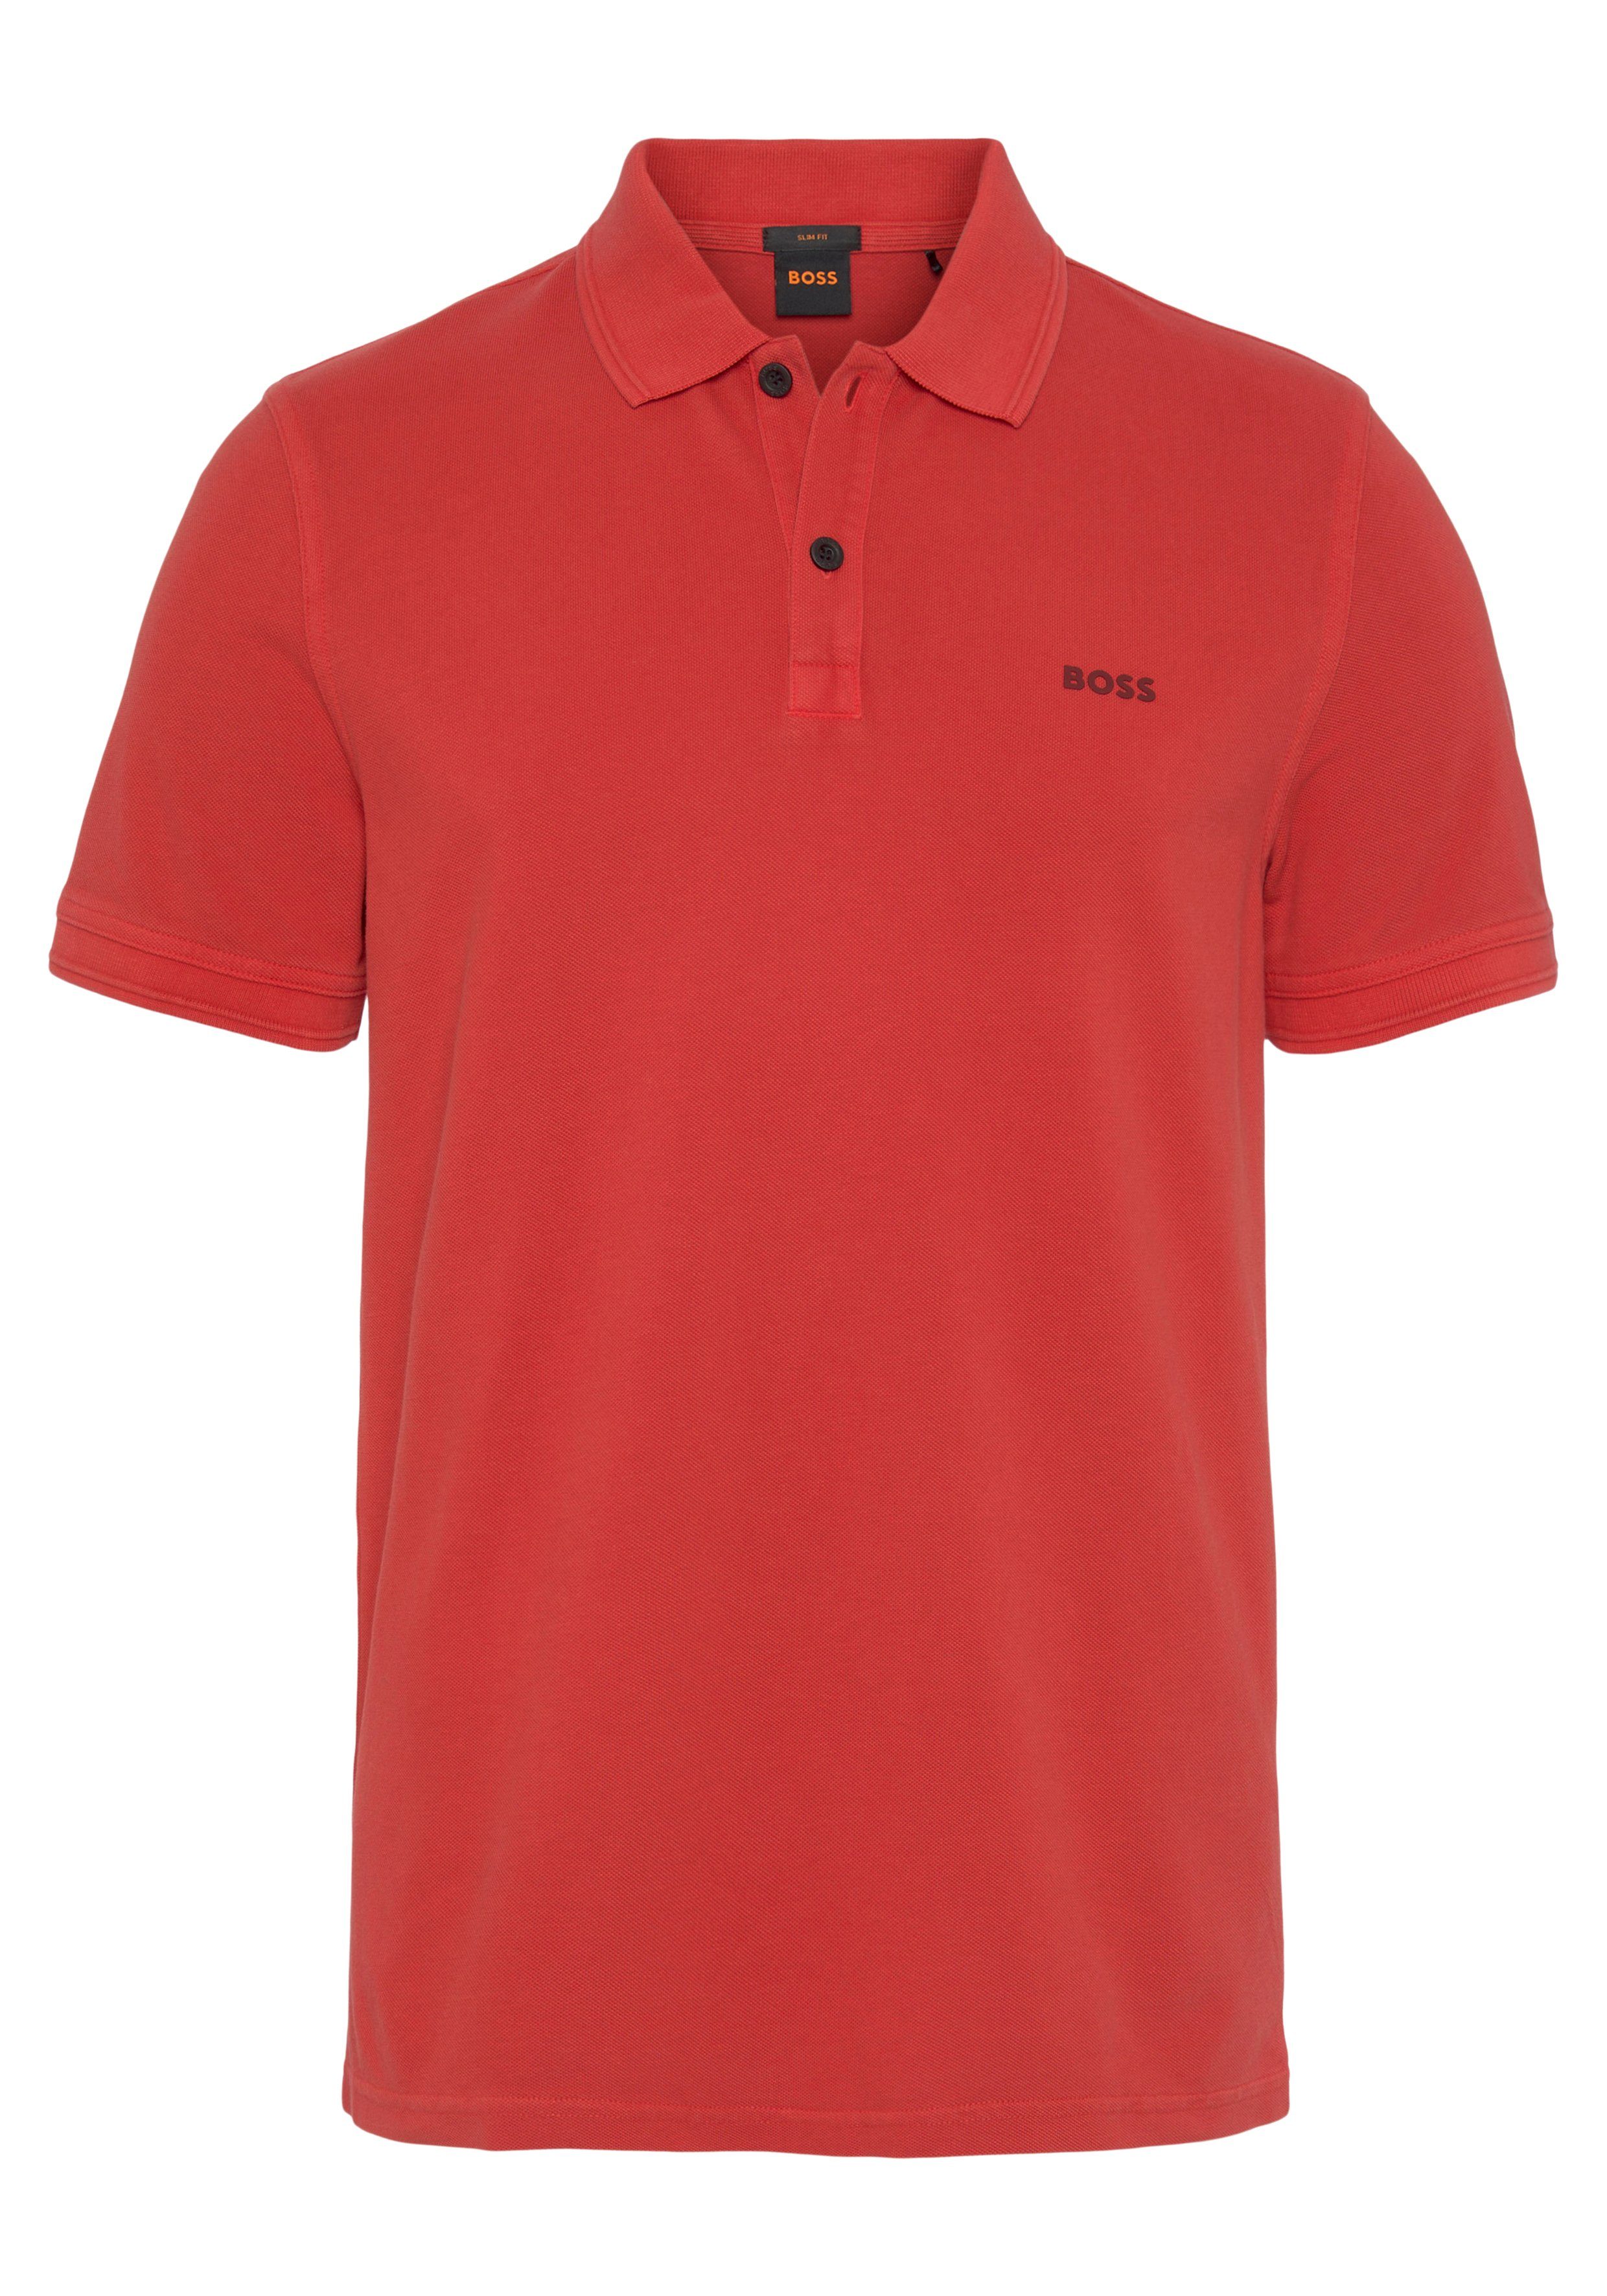 BOSS ORANGE Poloshirt Prime Logoschriftzug Brust der 10203439 auf Bright_Red 01 mit dezentem